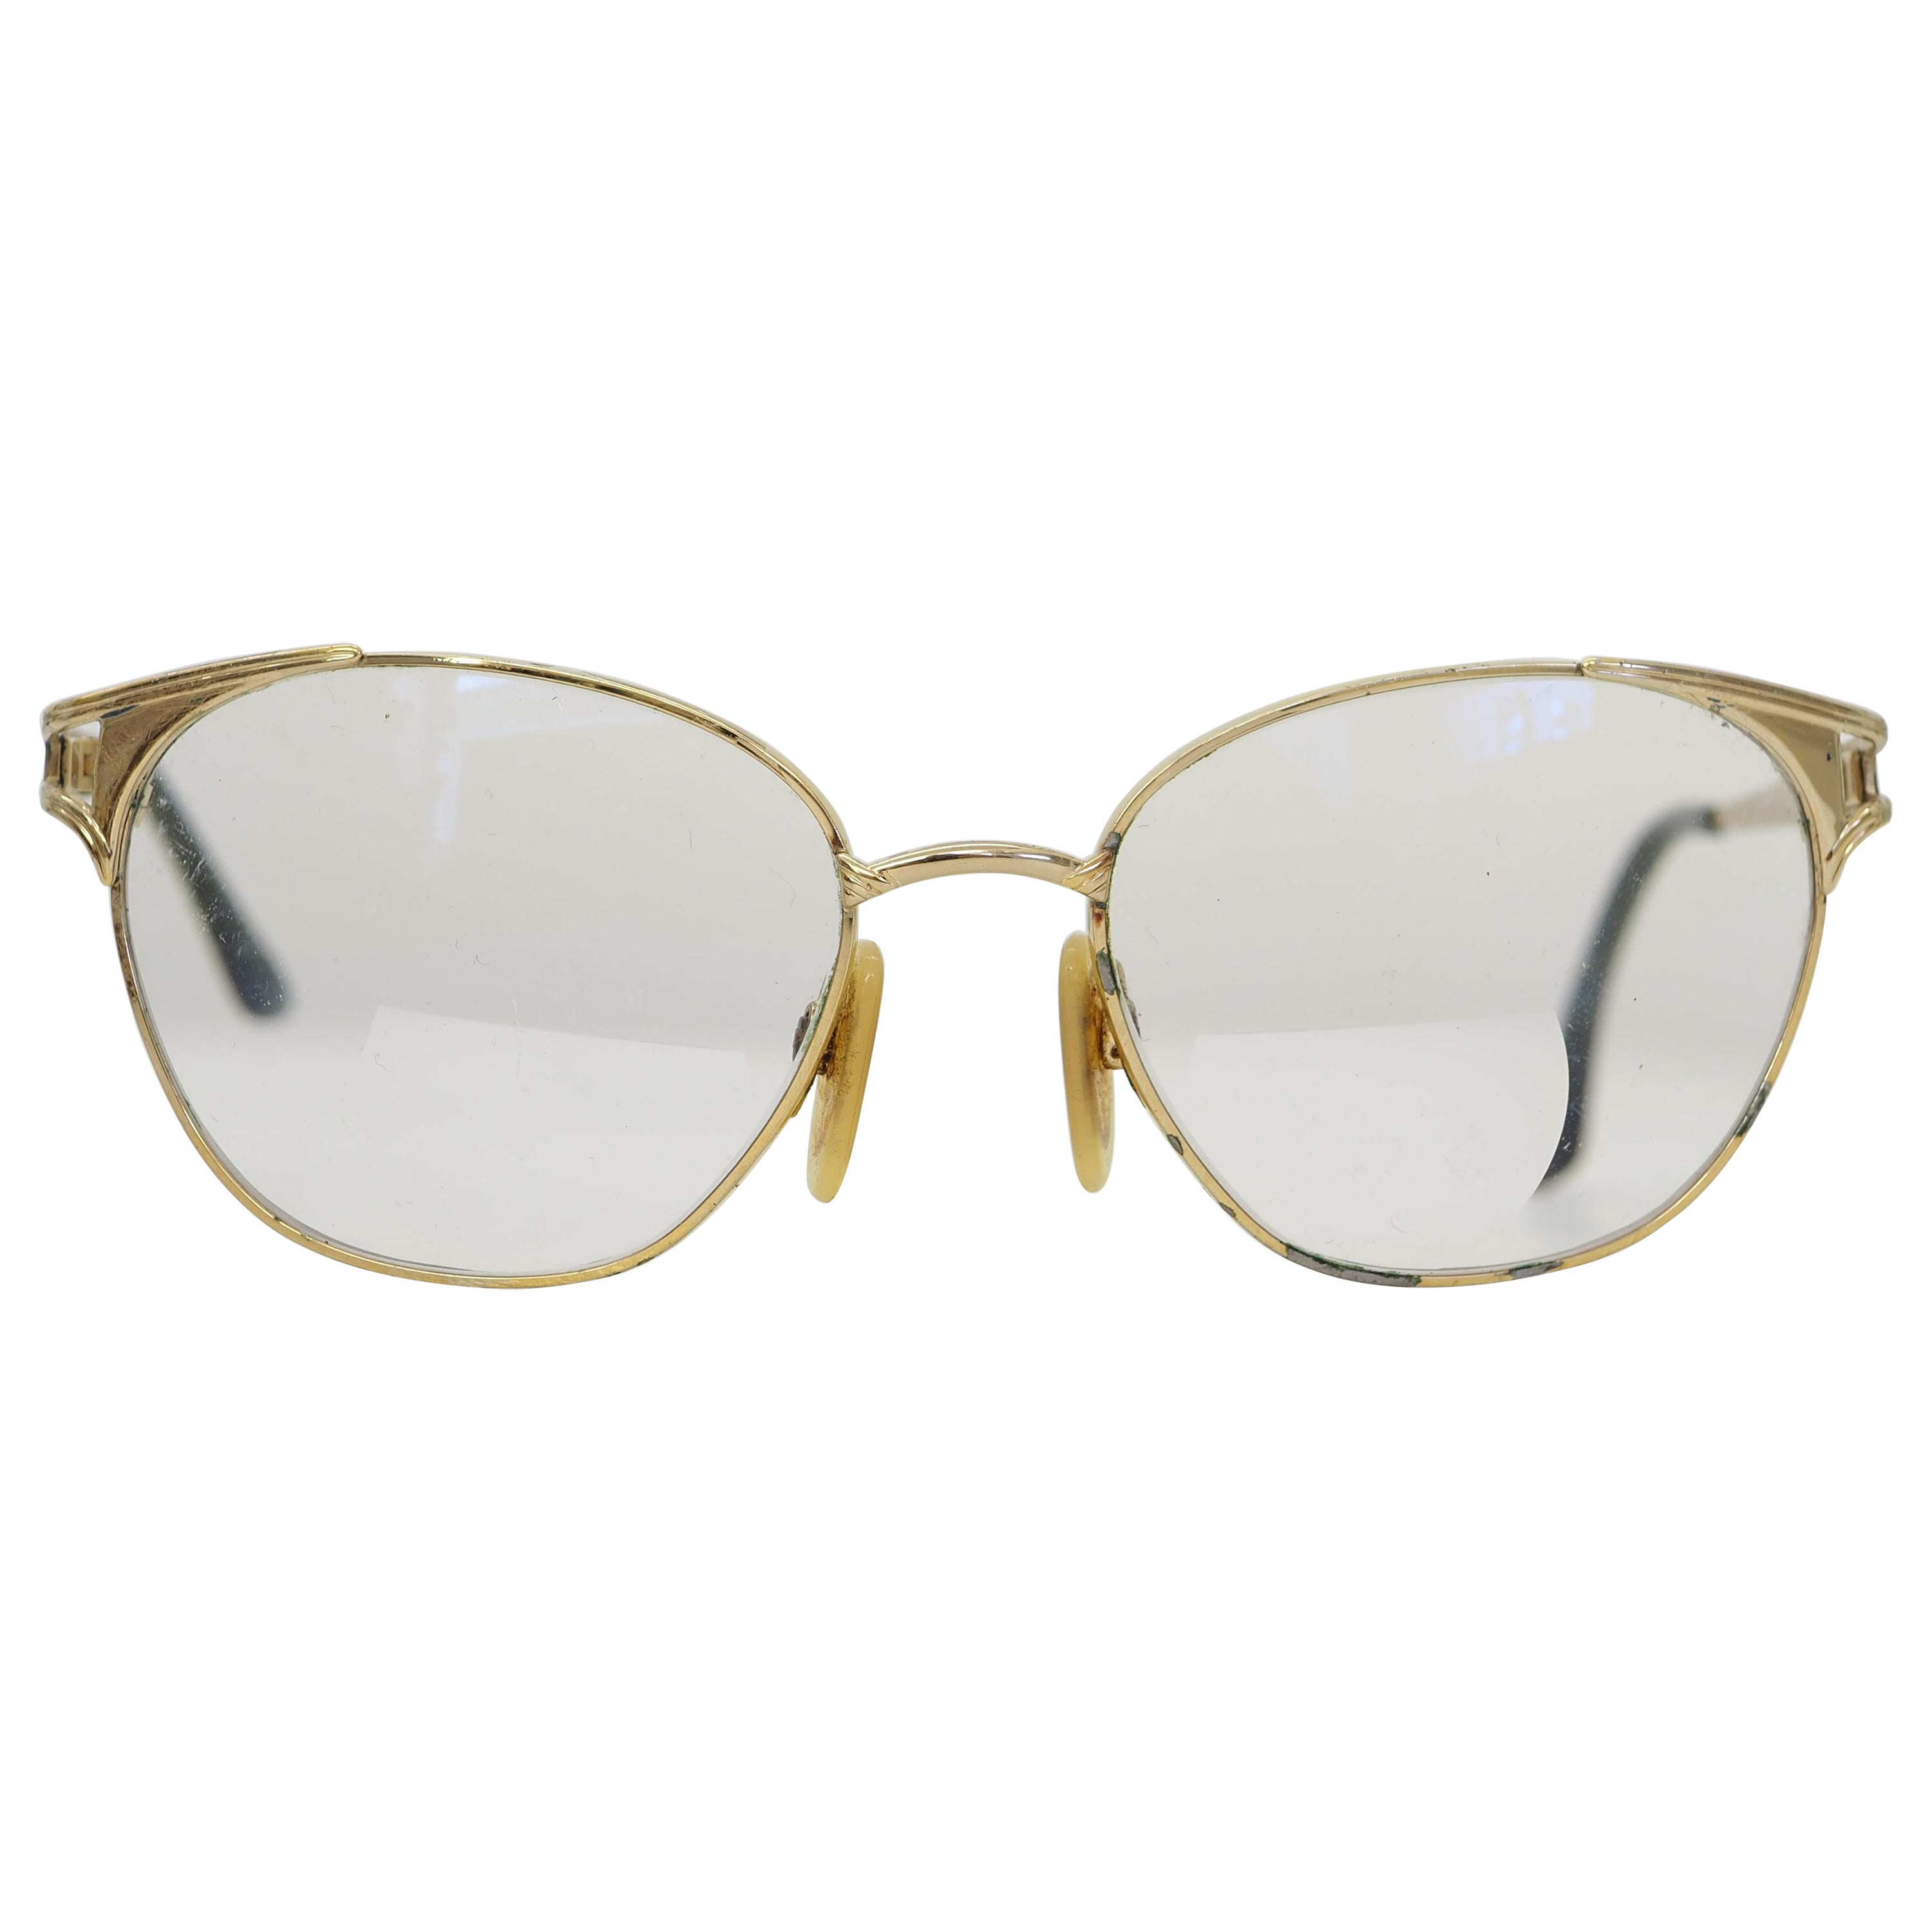 Yves Saint Laurent Frame - 116 For Sale on 1stDibs | ysl frames, saint  laurent frames, saint laurent glasses frames